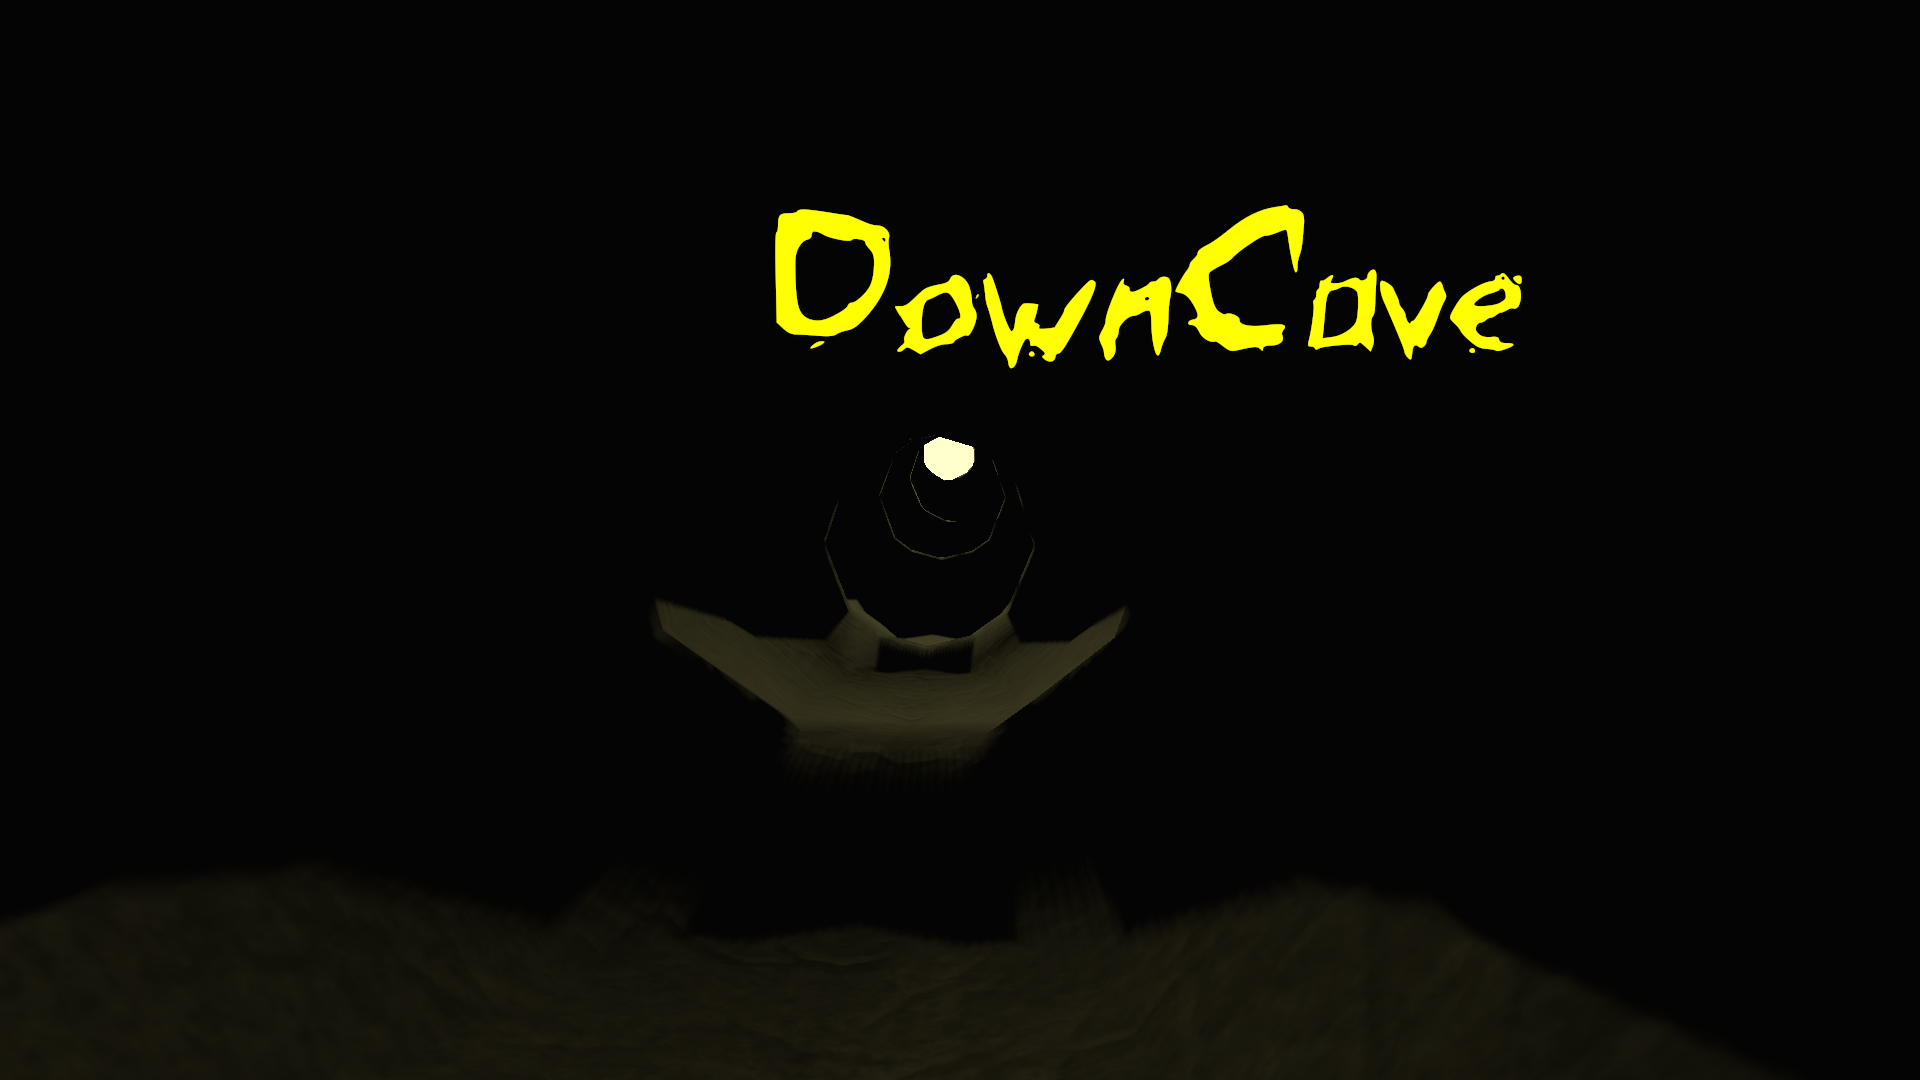 DownCave